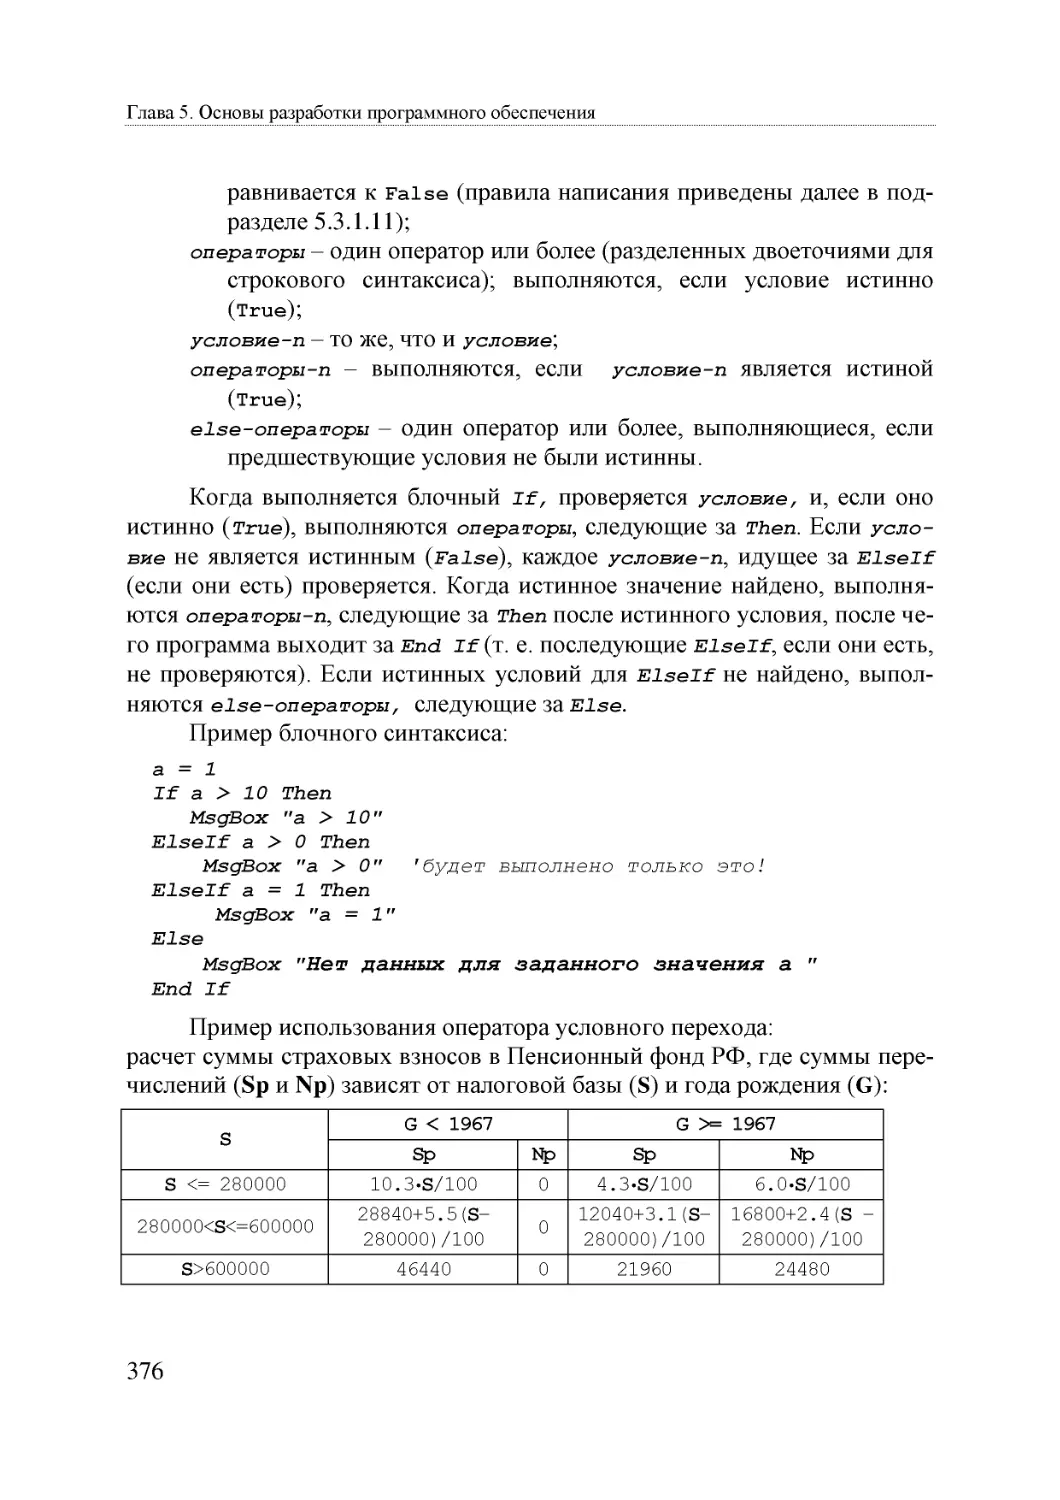 Informatika_Uchebnik_dlya_vuzov_2010 376